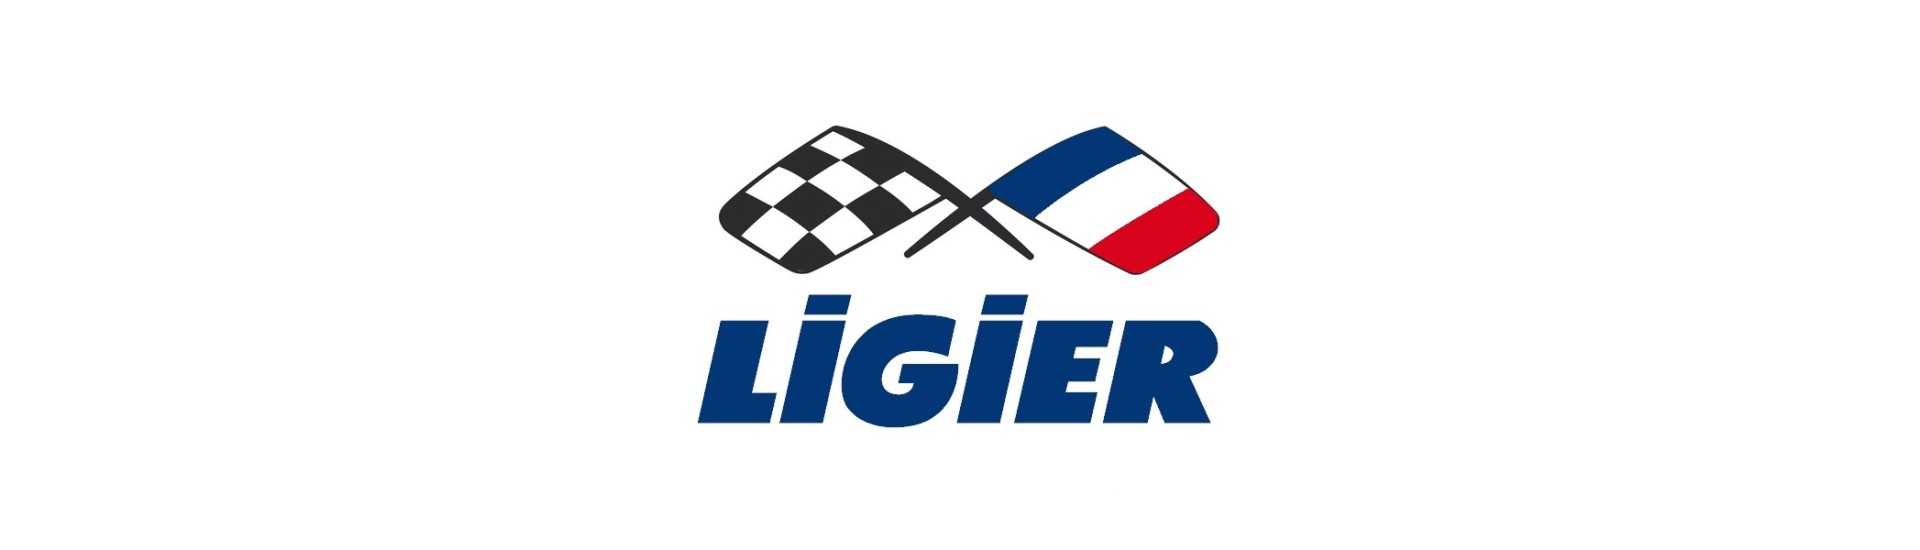 Istorka motor till bästa prisbil utan licens Ligier